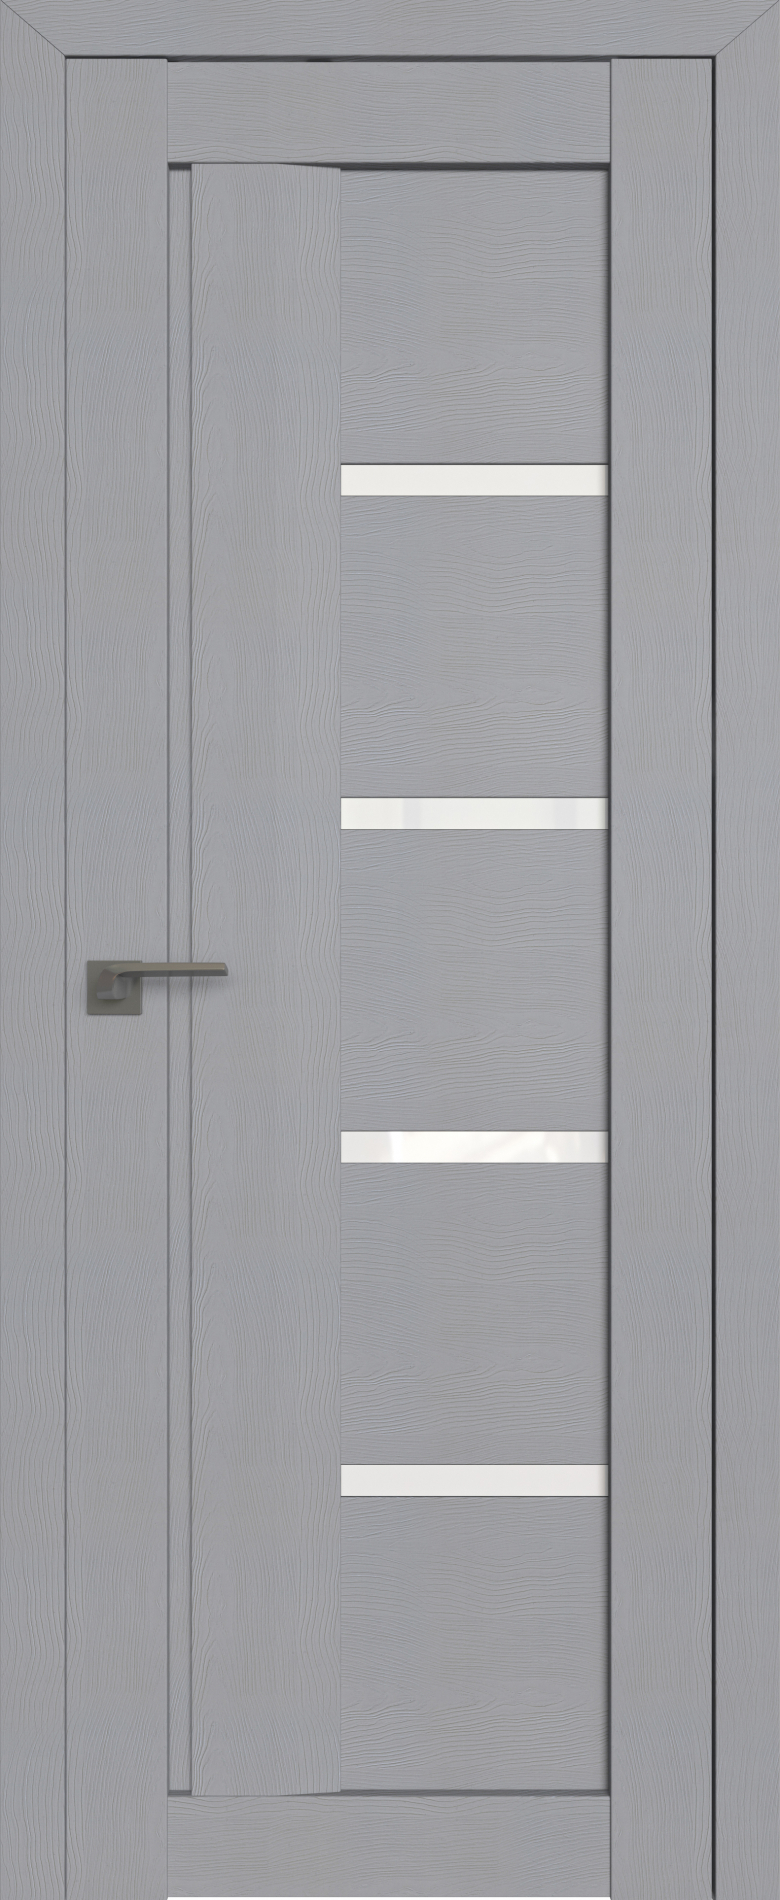 межкомнатные двери  Profil Doors 2.08STP Pine Manhattan grey